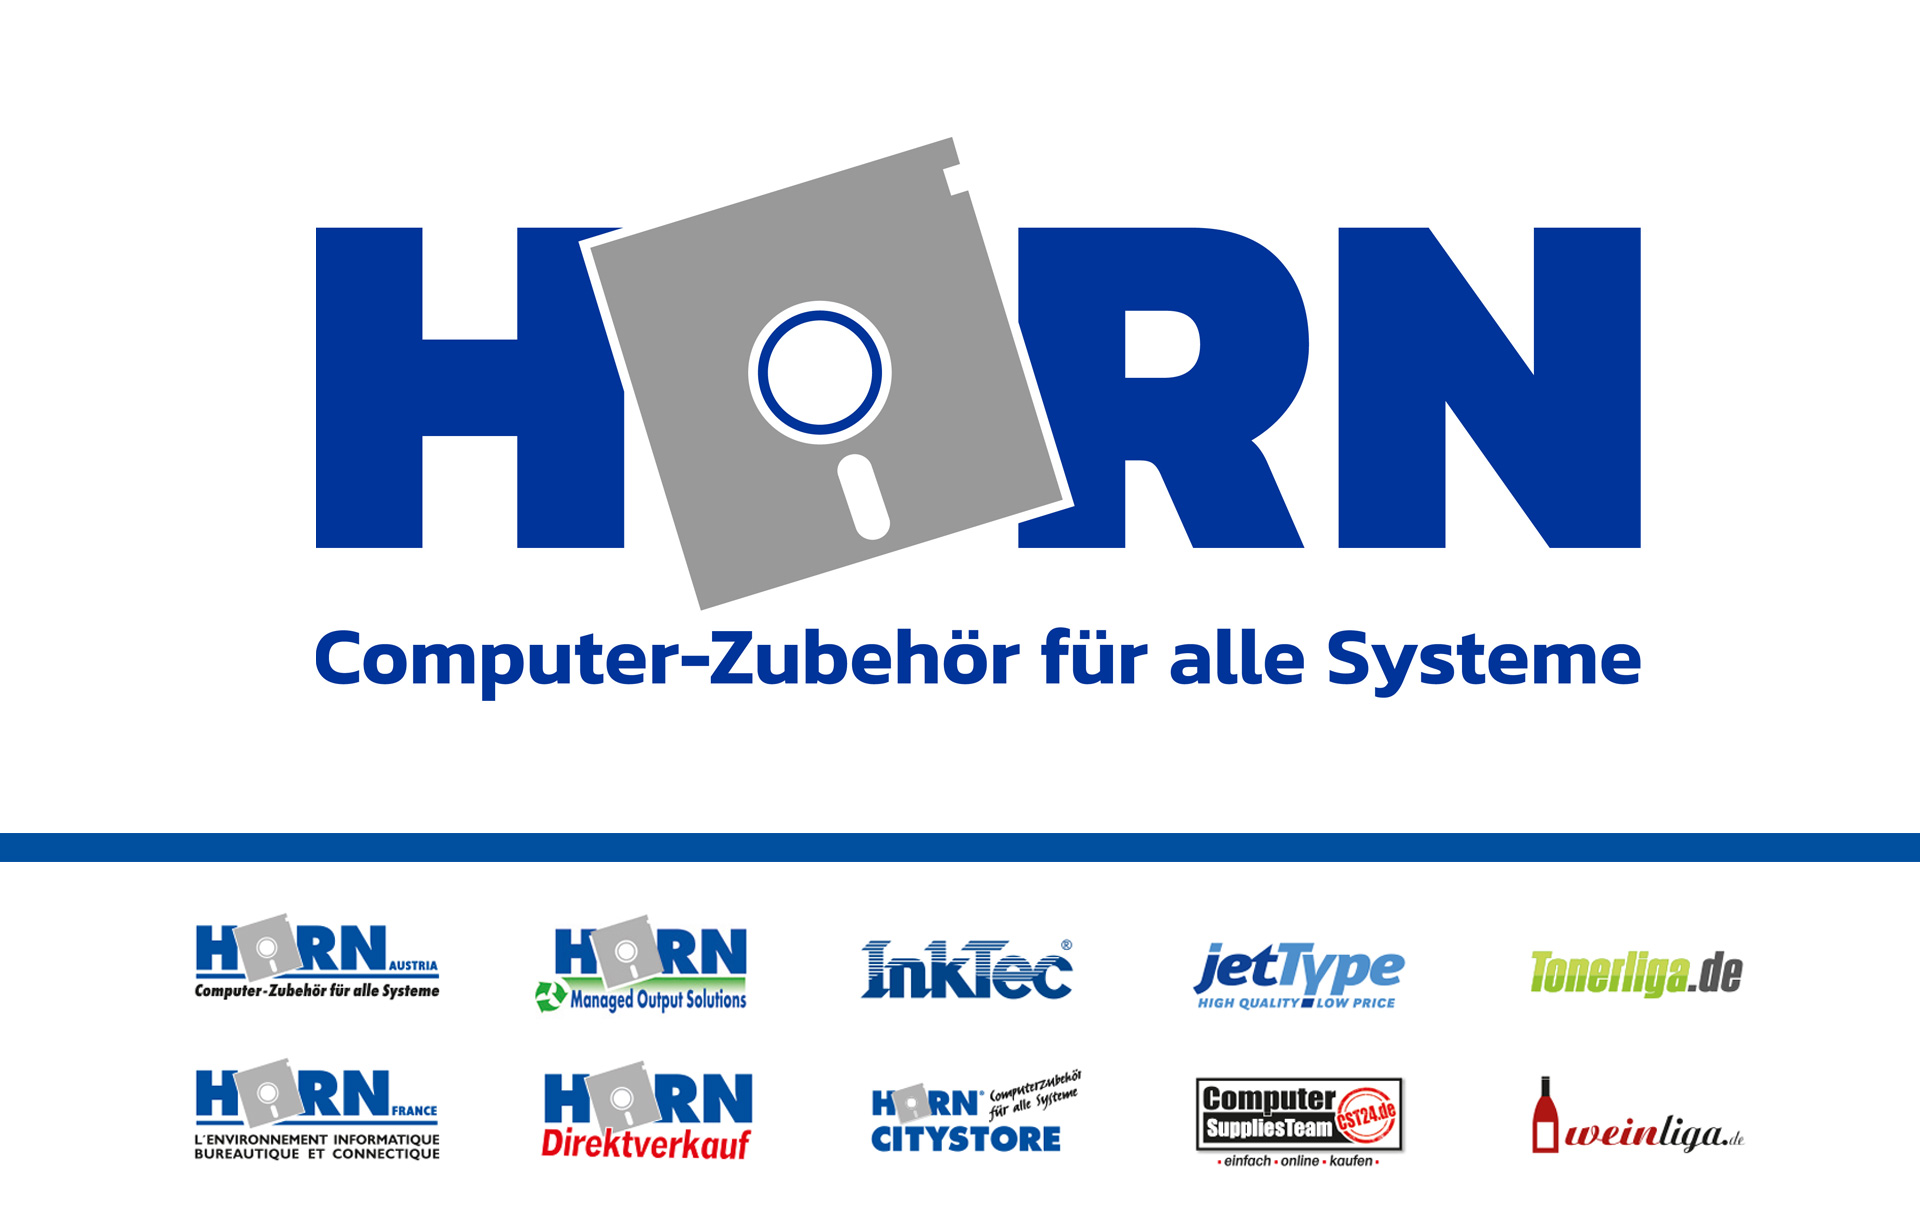 HORN GmbH – von 2004 bis 2019